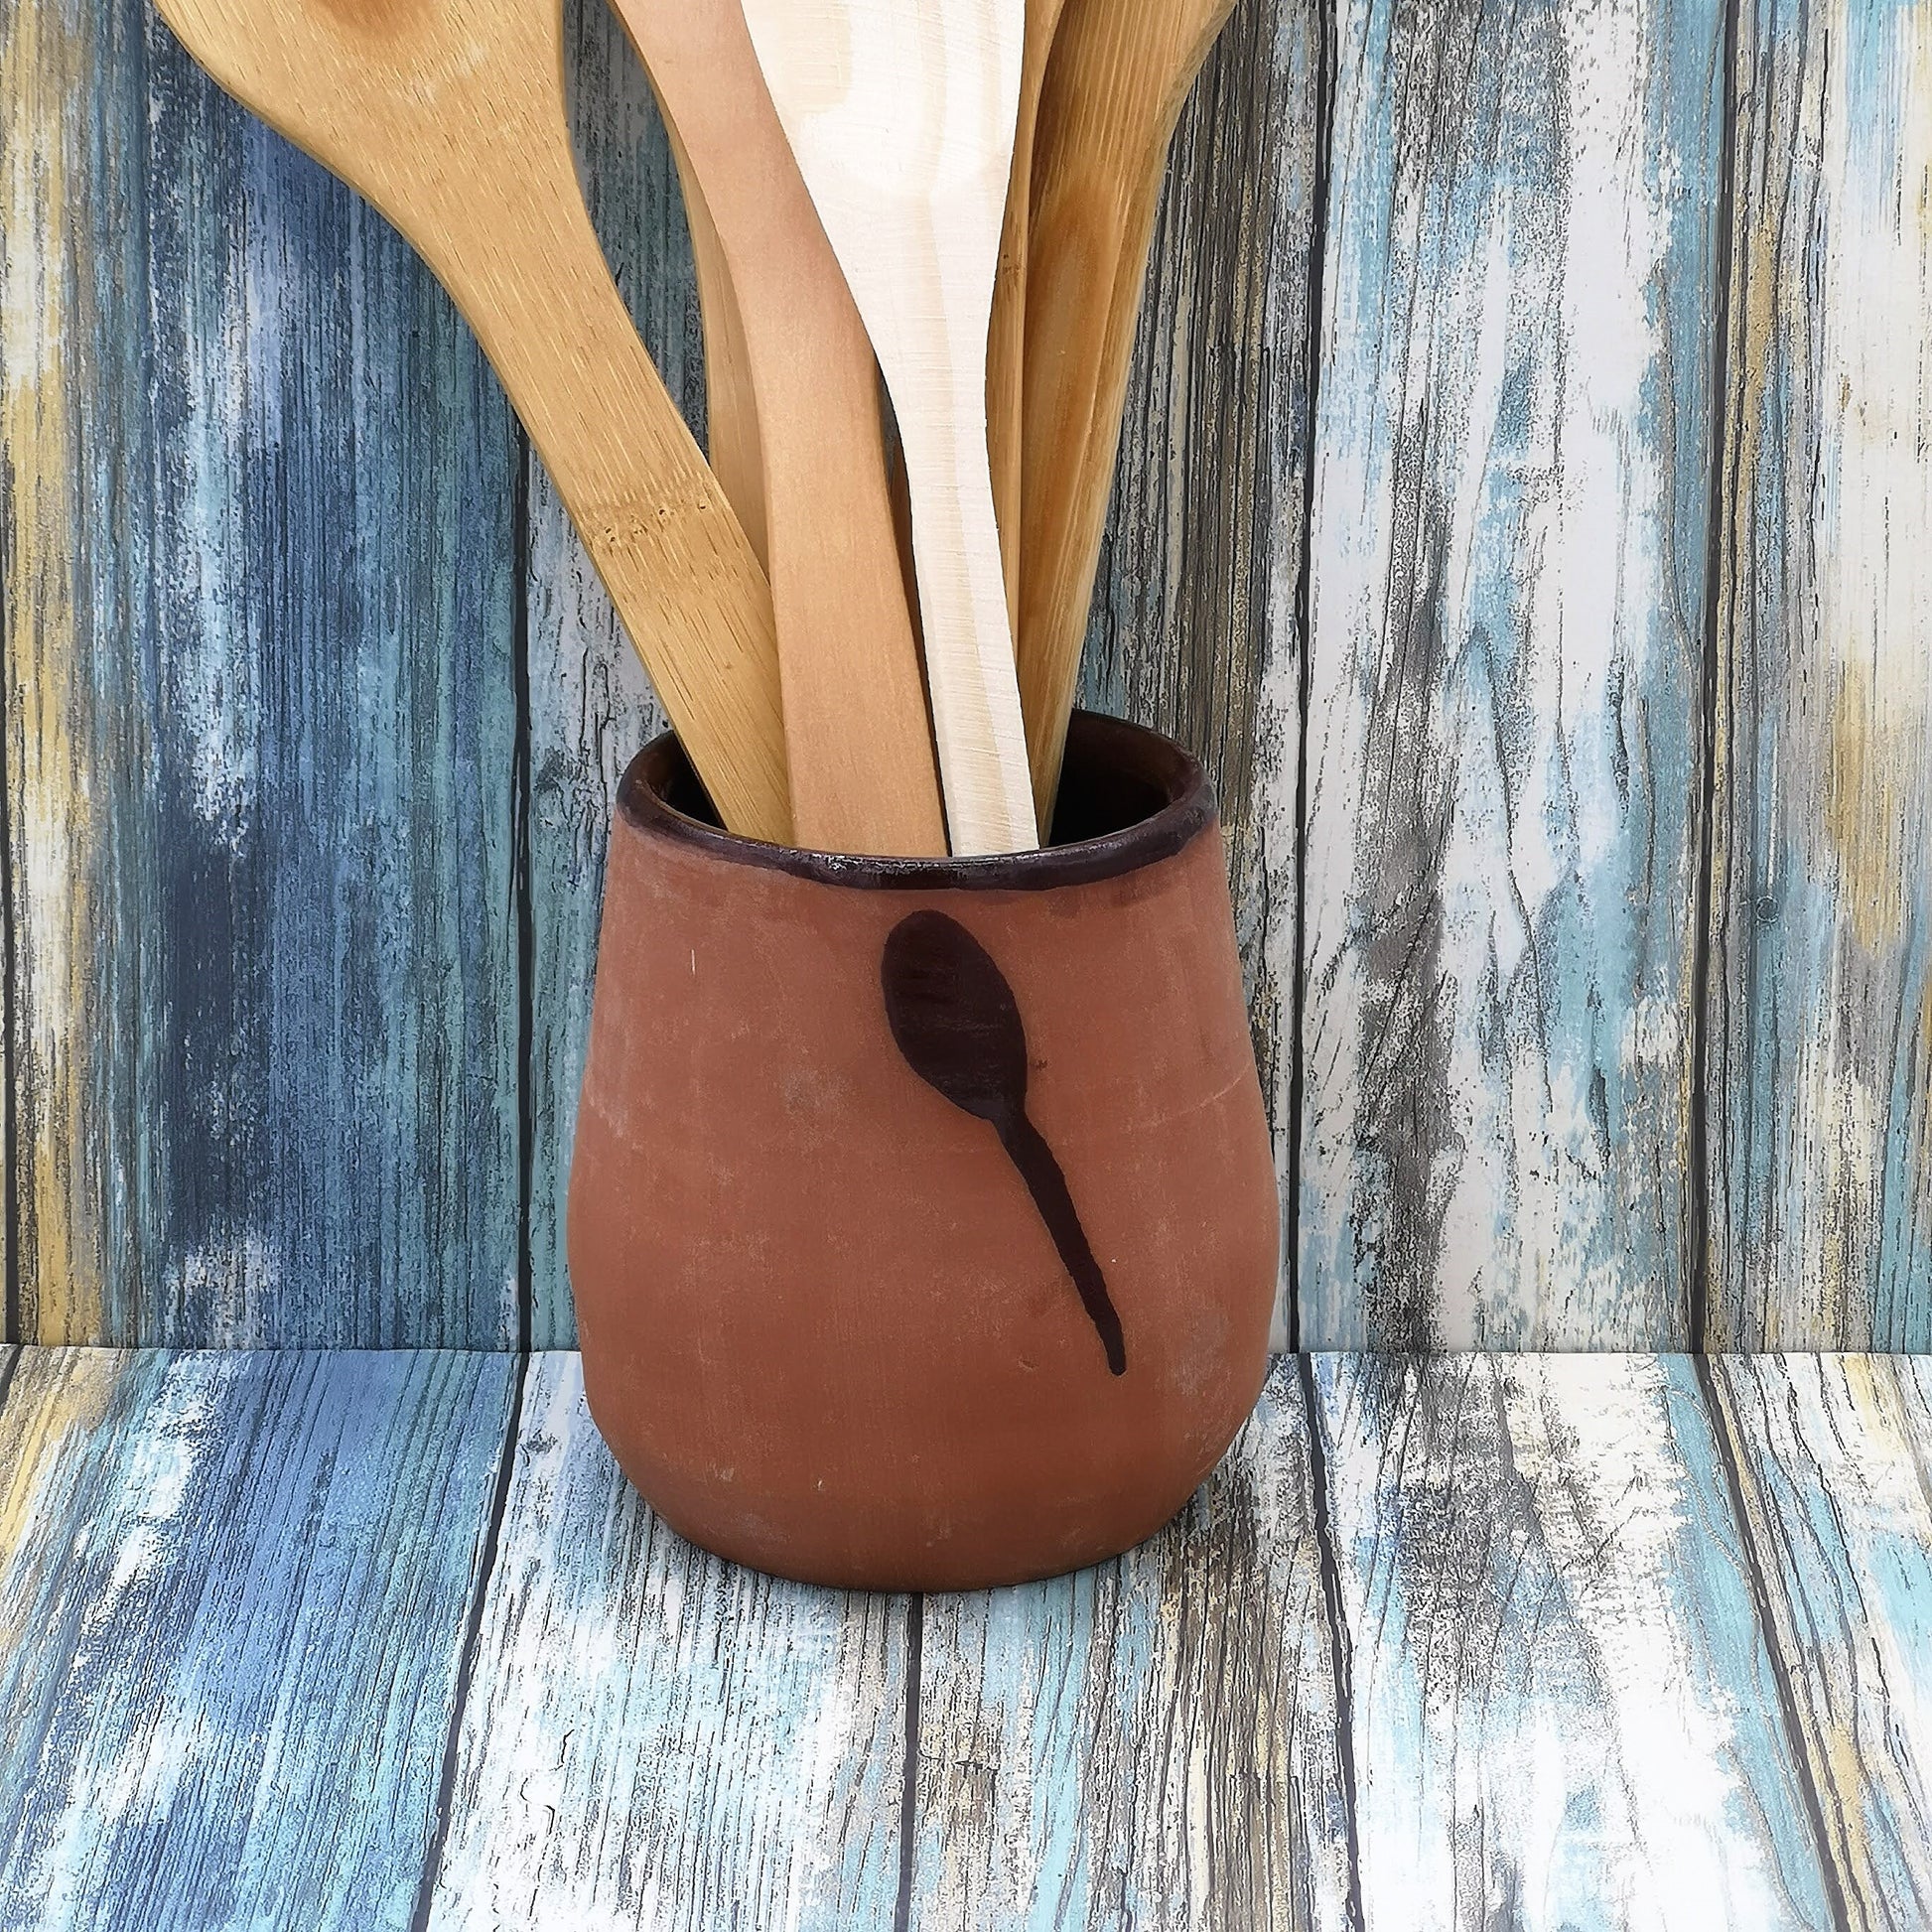 CERAMIC UTENSIL HOLDER, House Warming Gifts, Modern Terracotta Ceramic Large Utensil Kitchen Holder Vase, Custom Utensil Organizer - Ceramica Ana Rafael